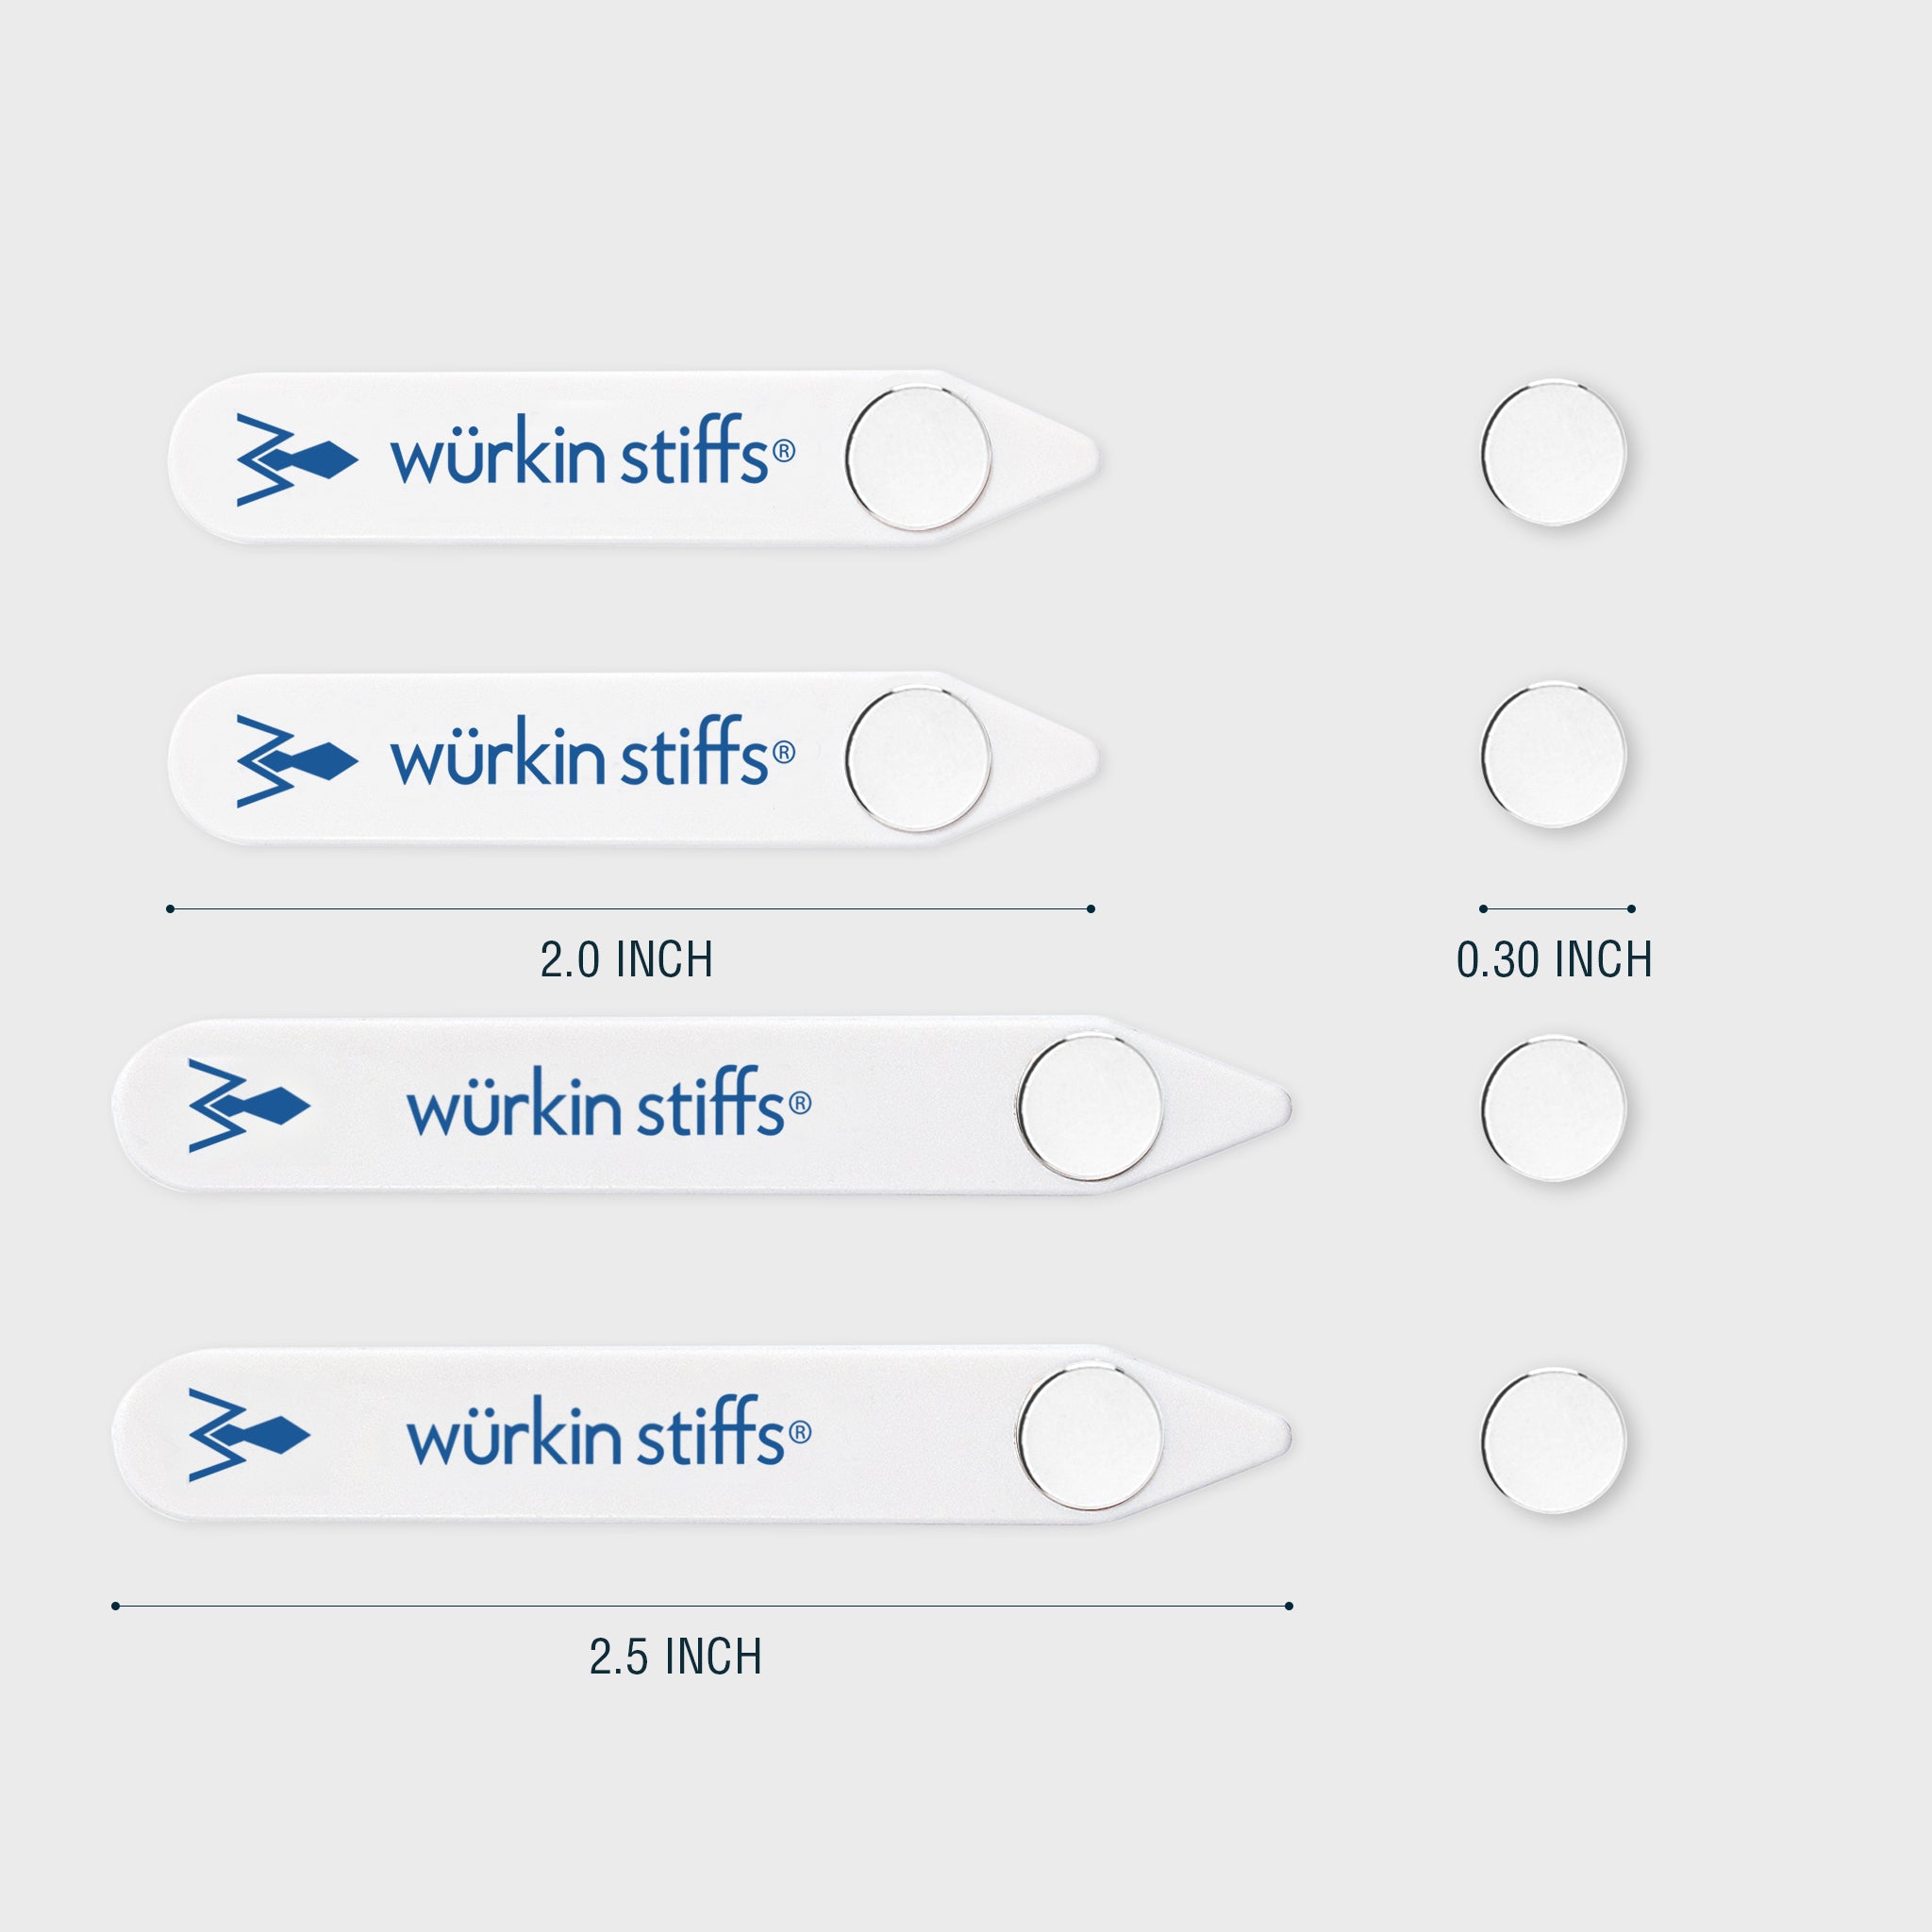 Wurkin Stiffs - Stiff-N-Stays Plastic Magnetic Collar Stays